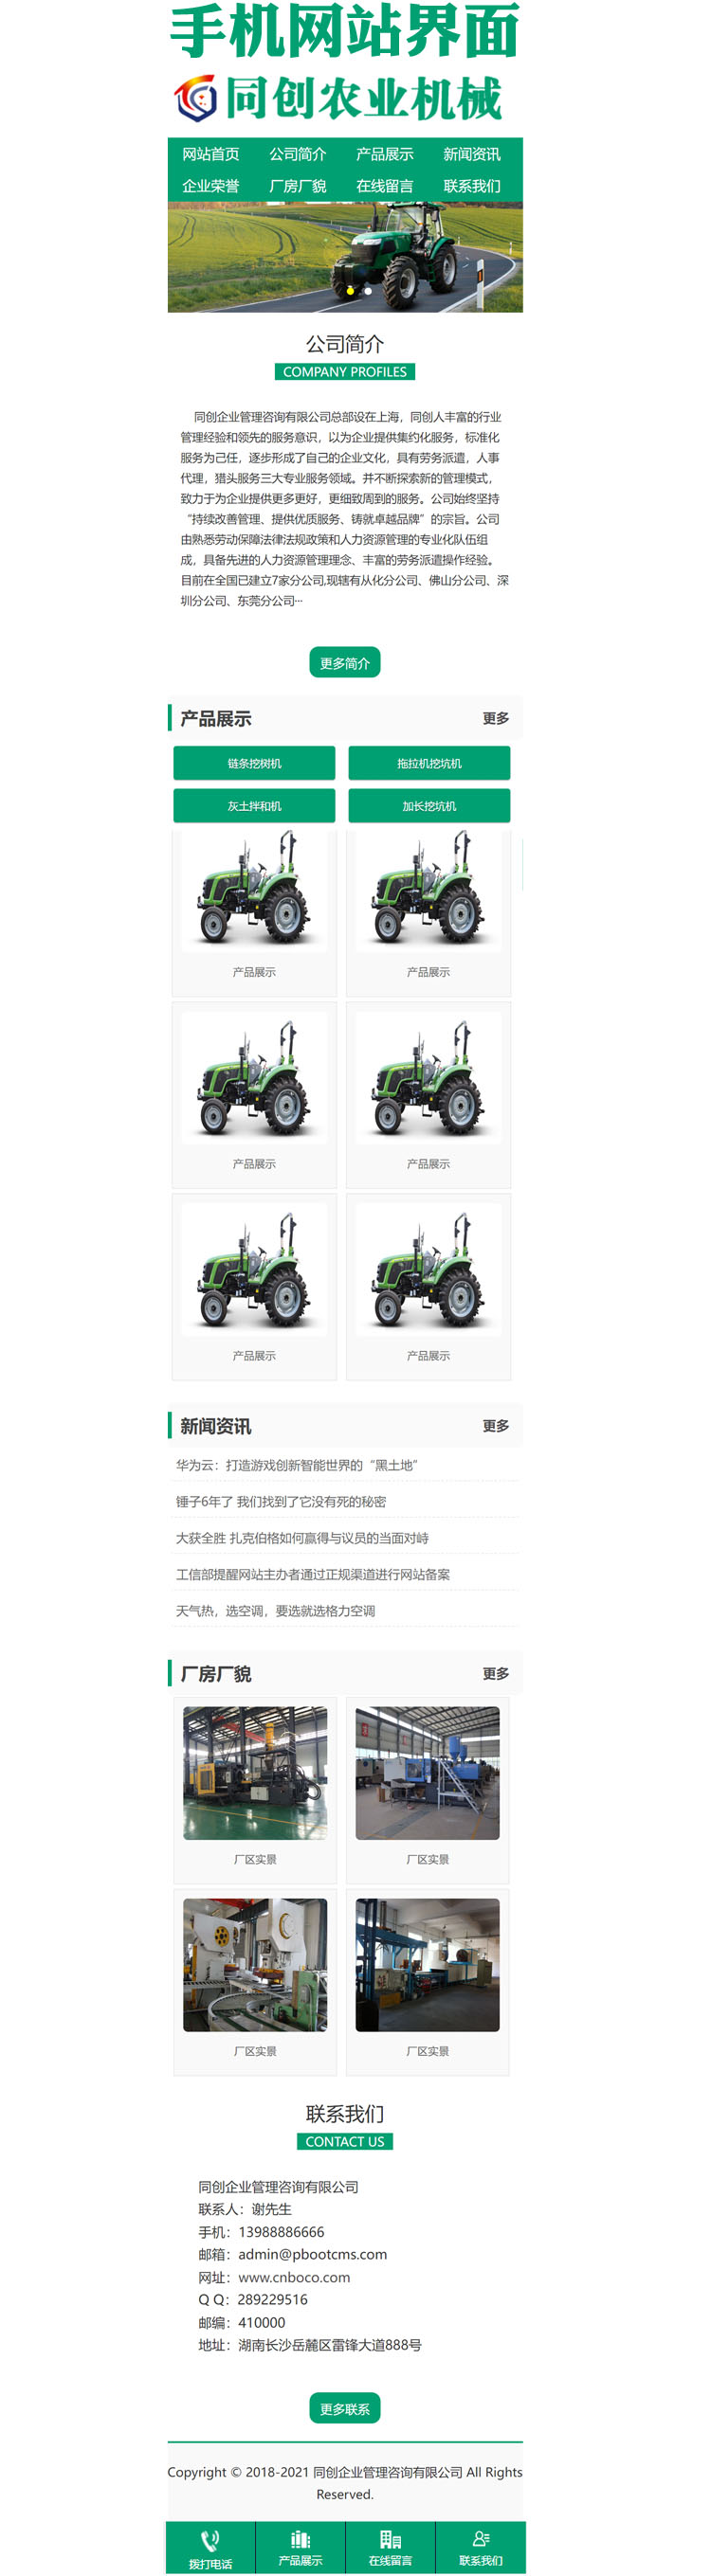 农业机械网站制作源码程序-XX262-3